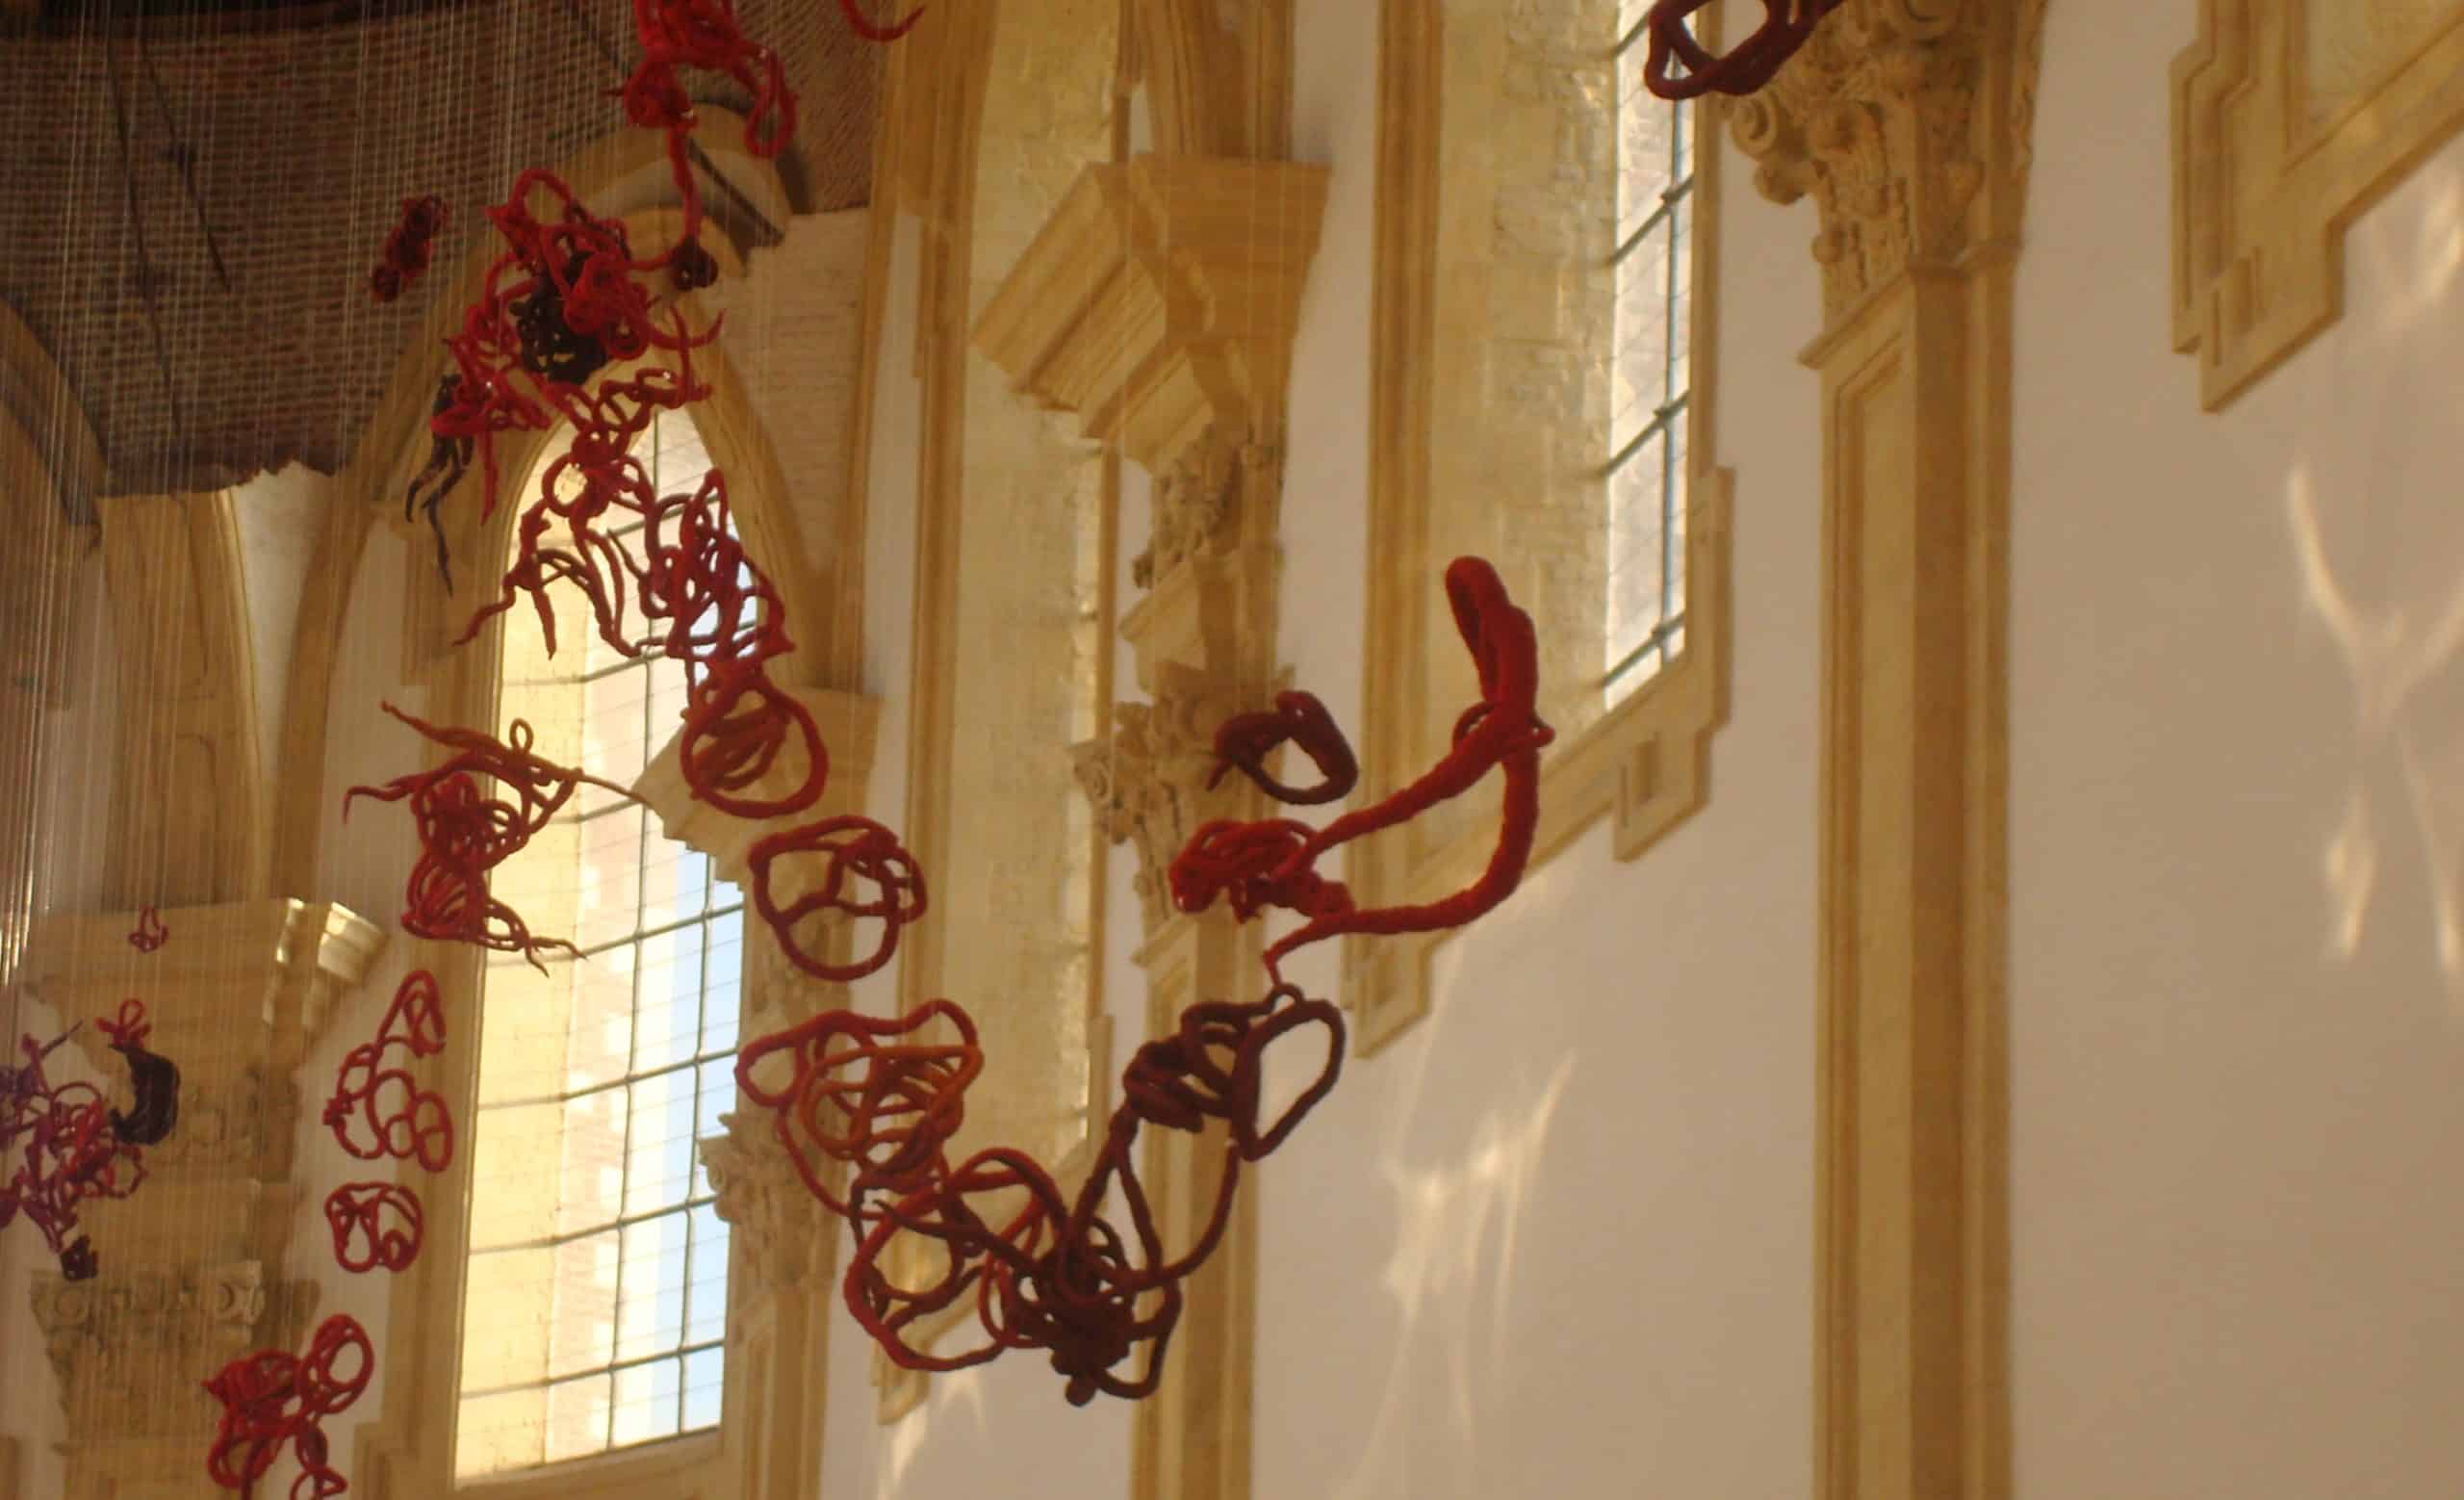 linen sculptures exhibition in chapel by Aude Franjou Musee de la Chartreuse in Douai